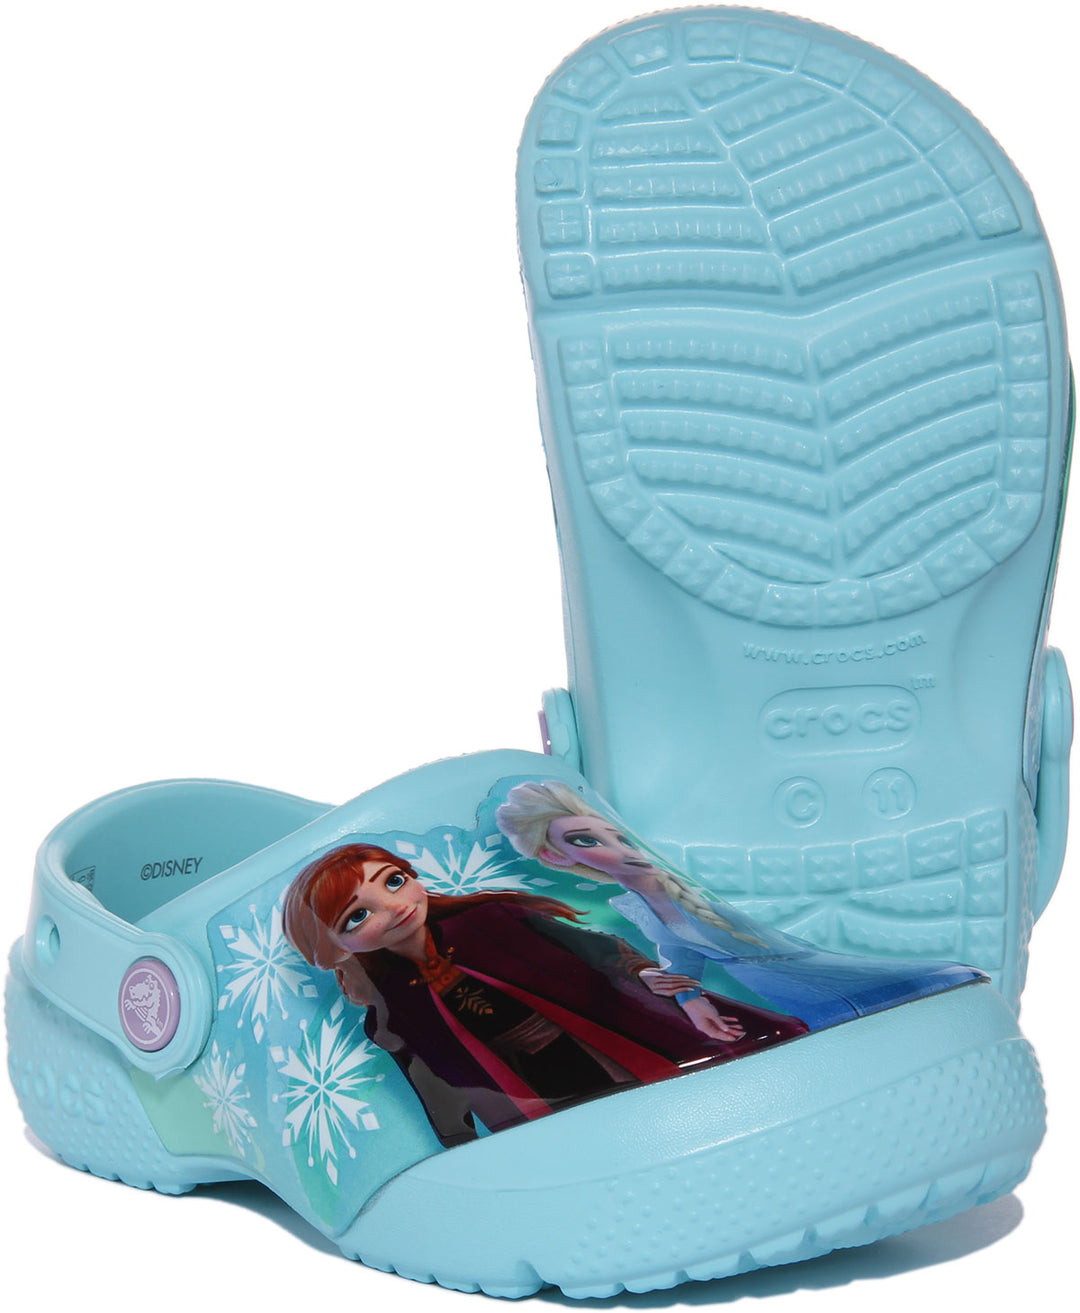 Crocs Disney Frozen In Blue For Kids